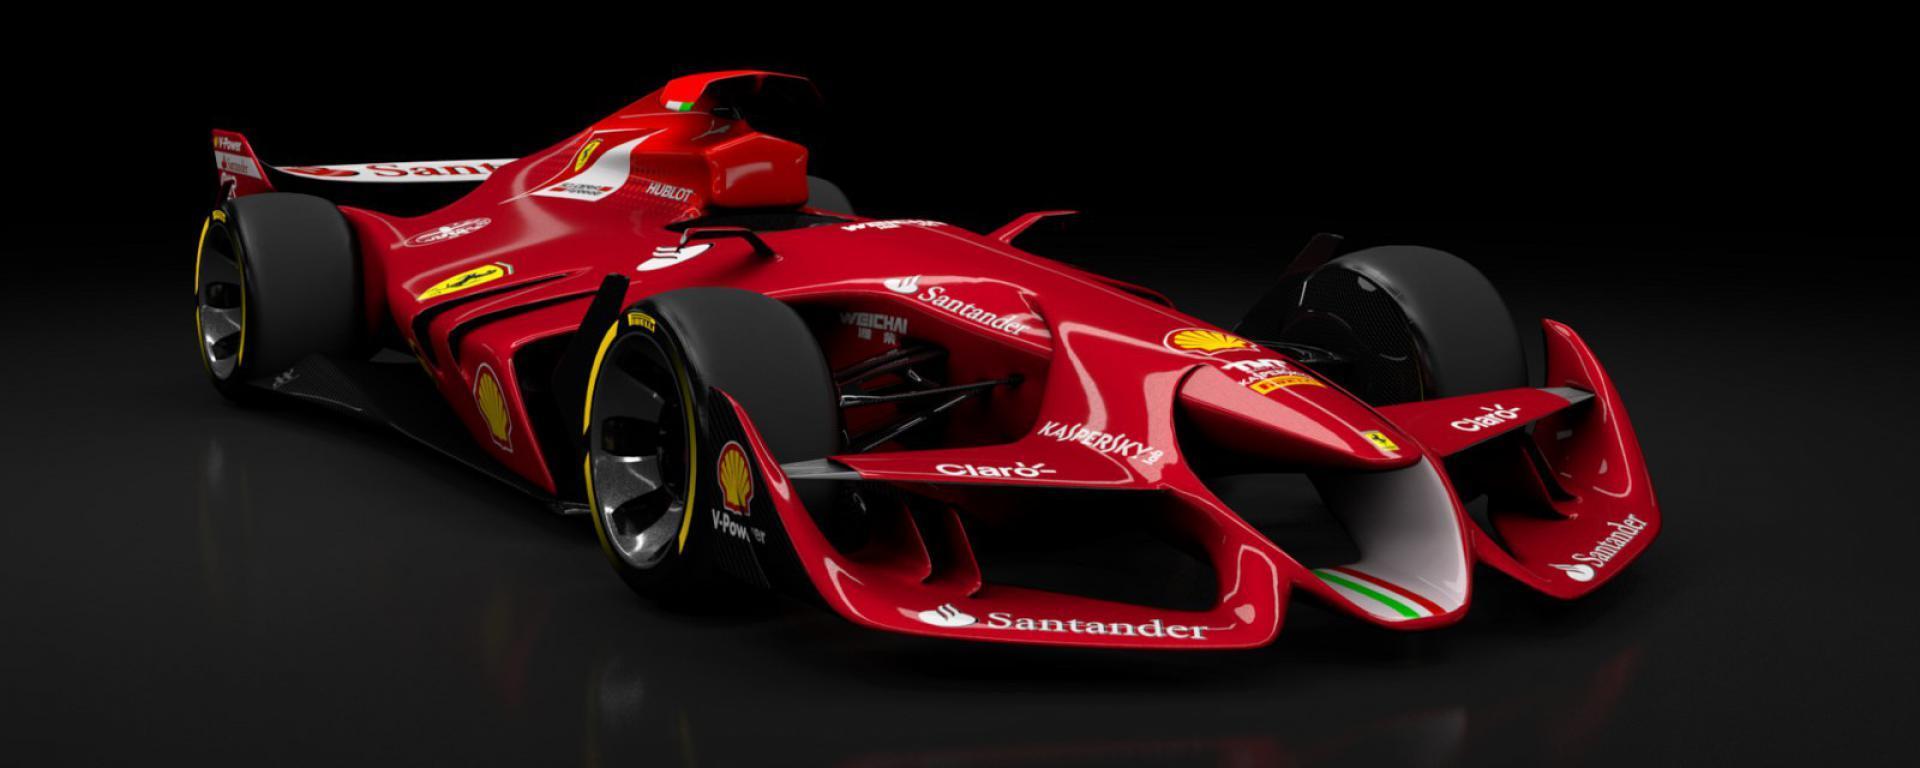 F1 Ferrari News Marchionne In Formula E A Due Wallpaper De La HD